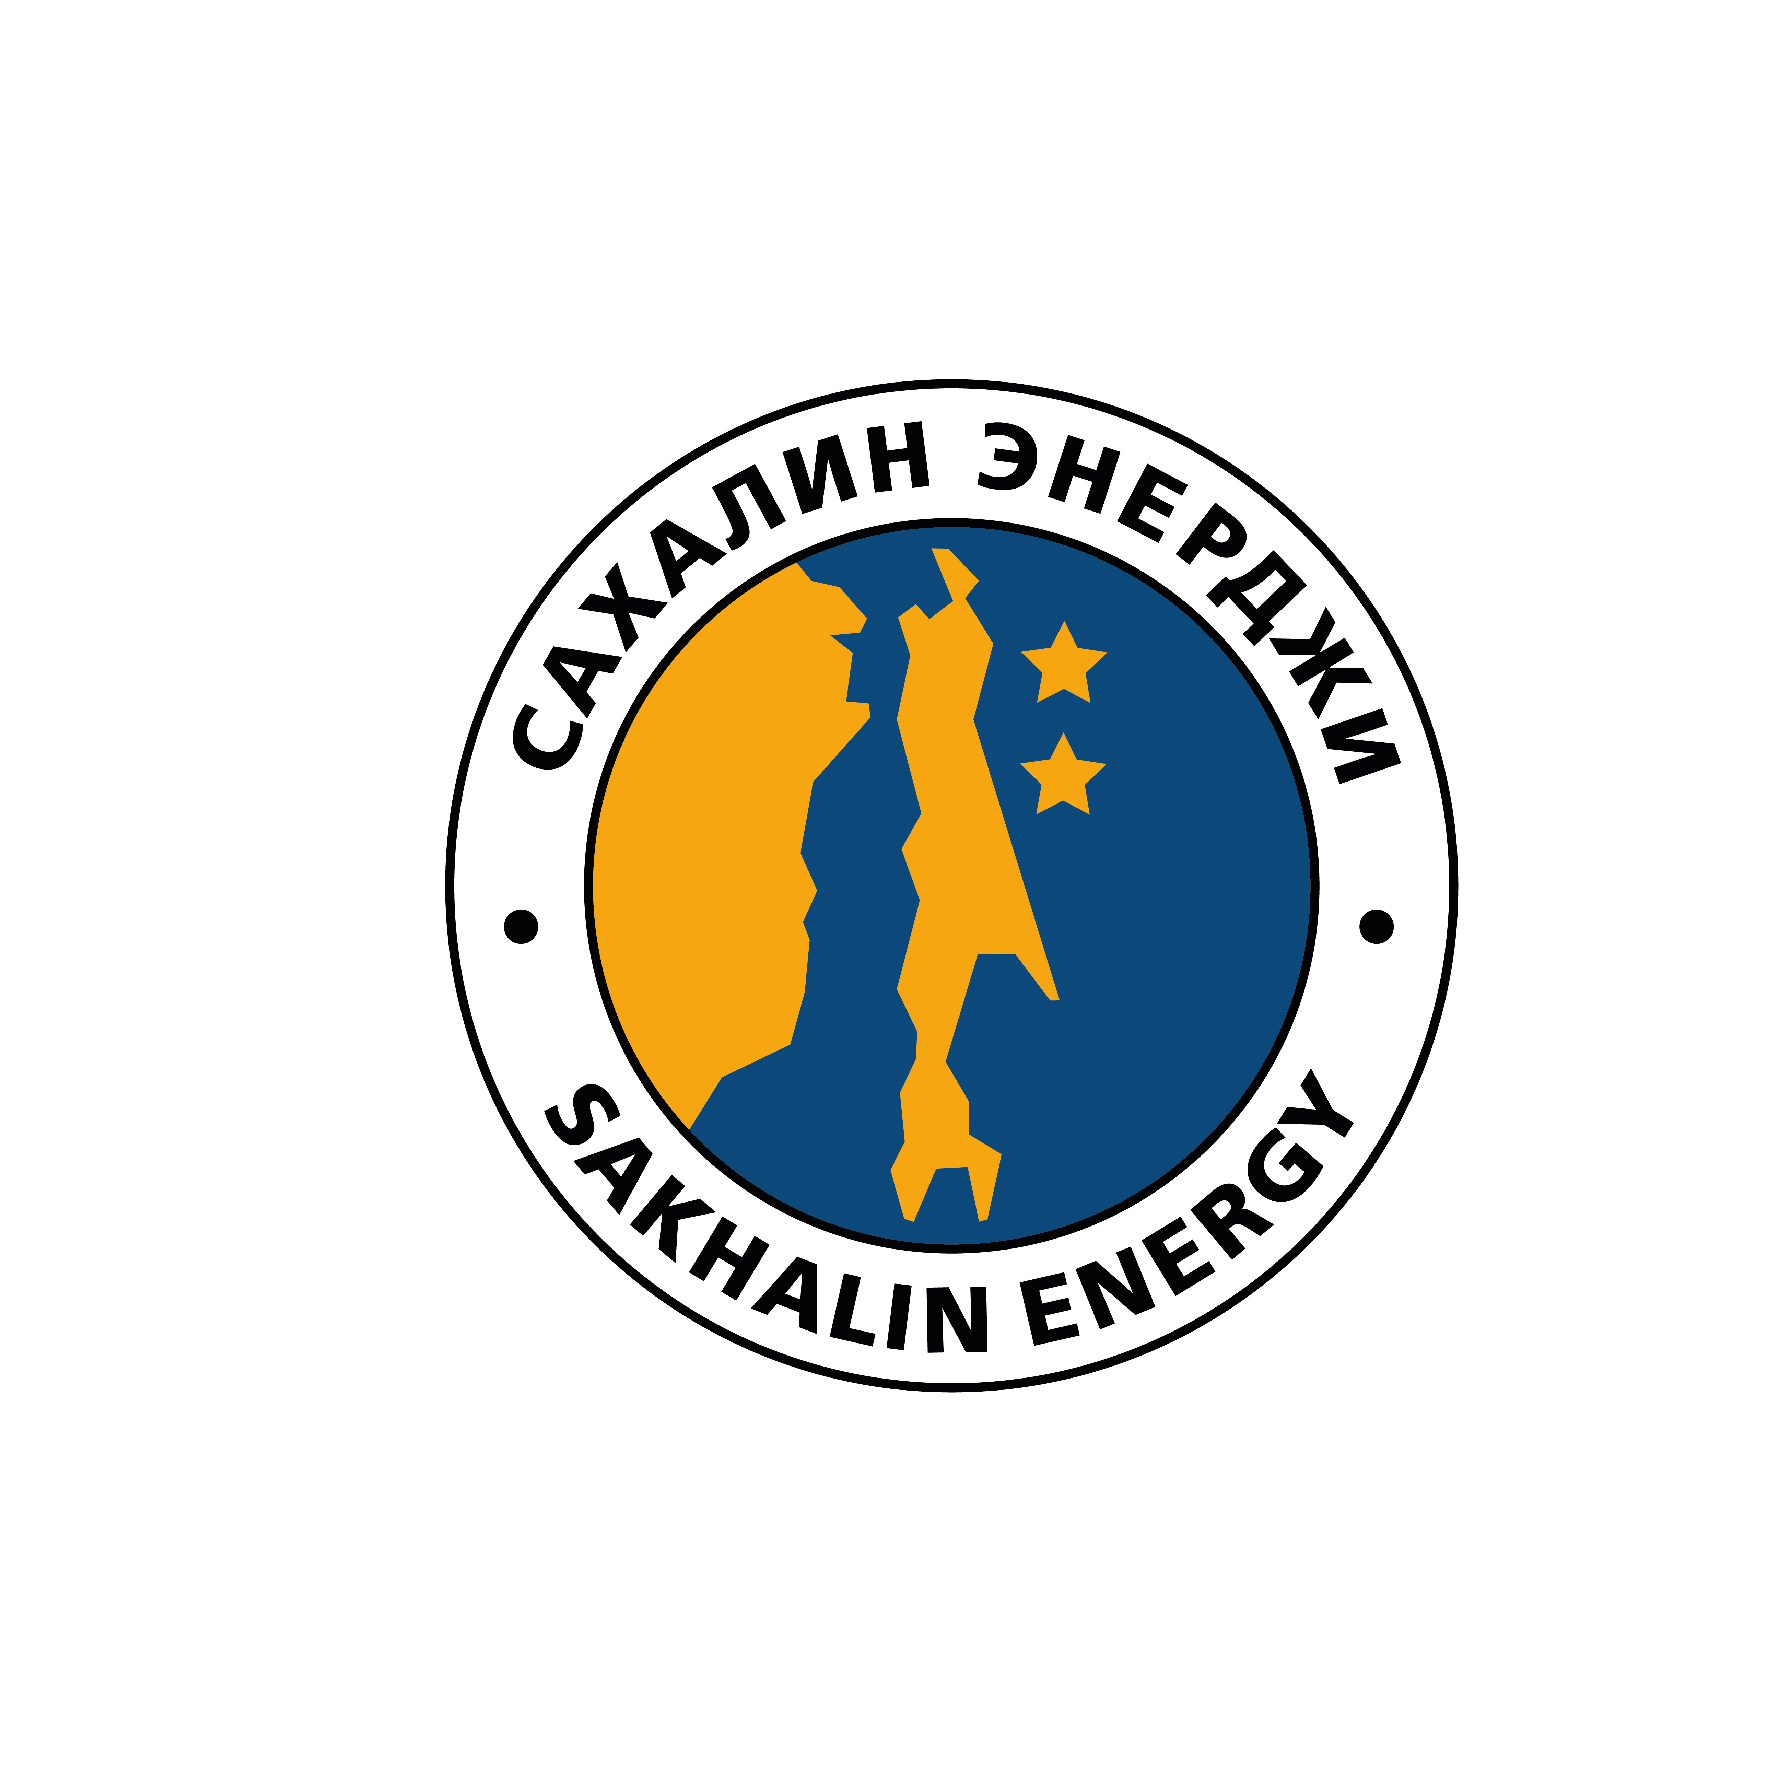 Sakhalin Energy Investment Co. Ltd